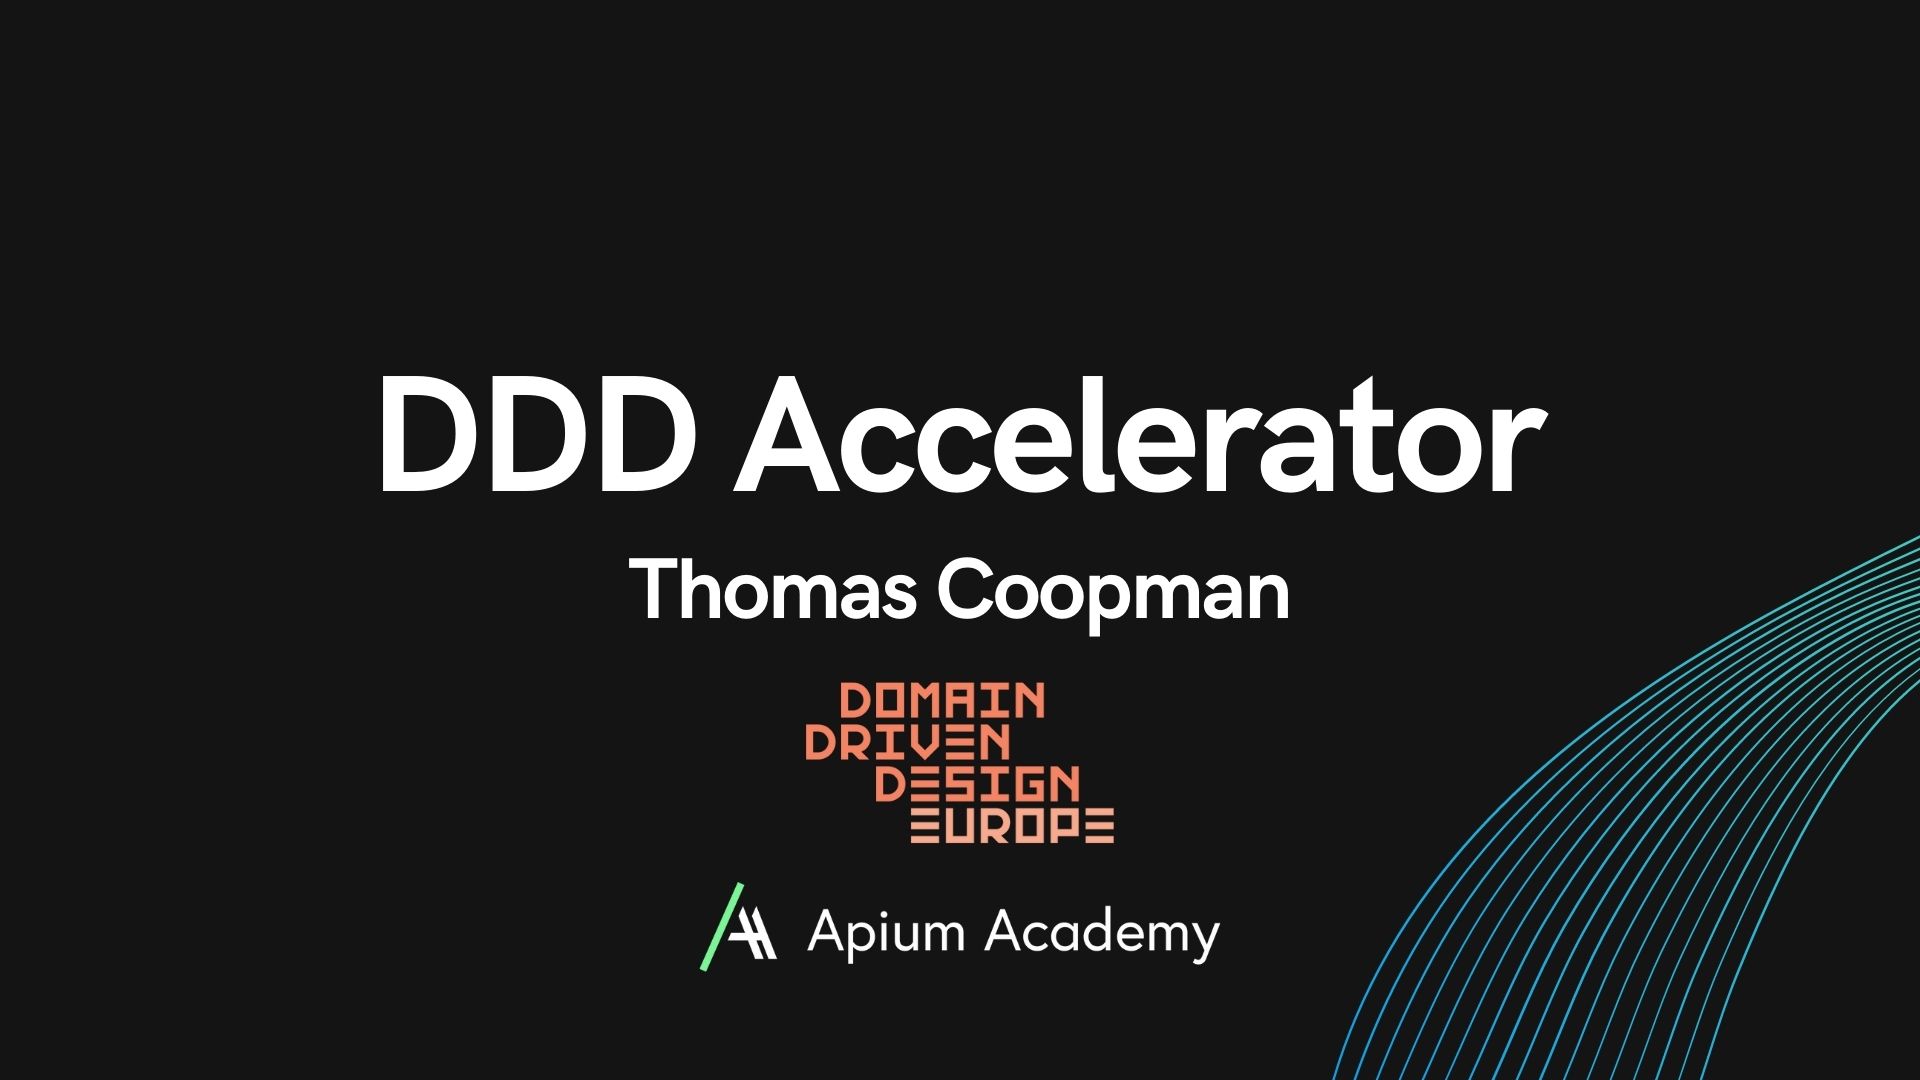 DDD Accelerator